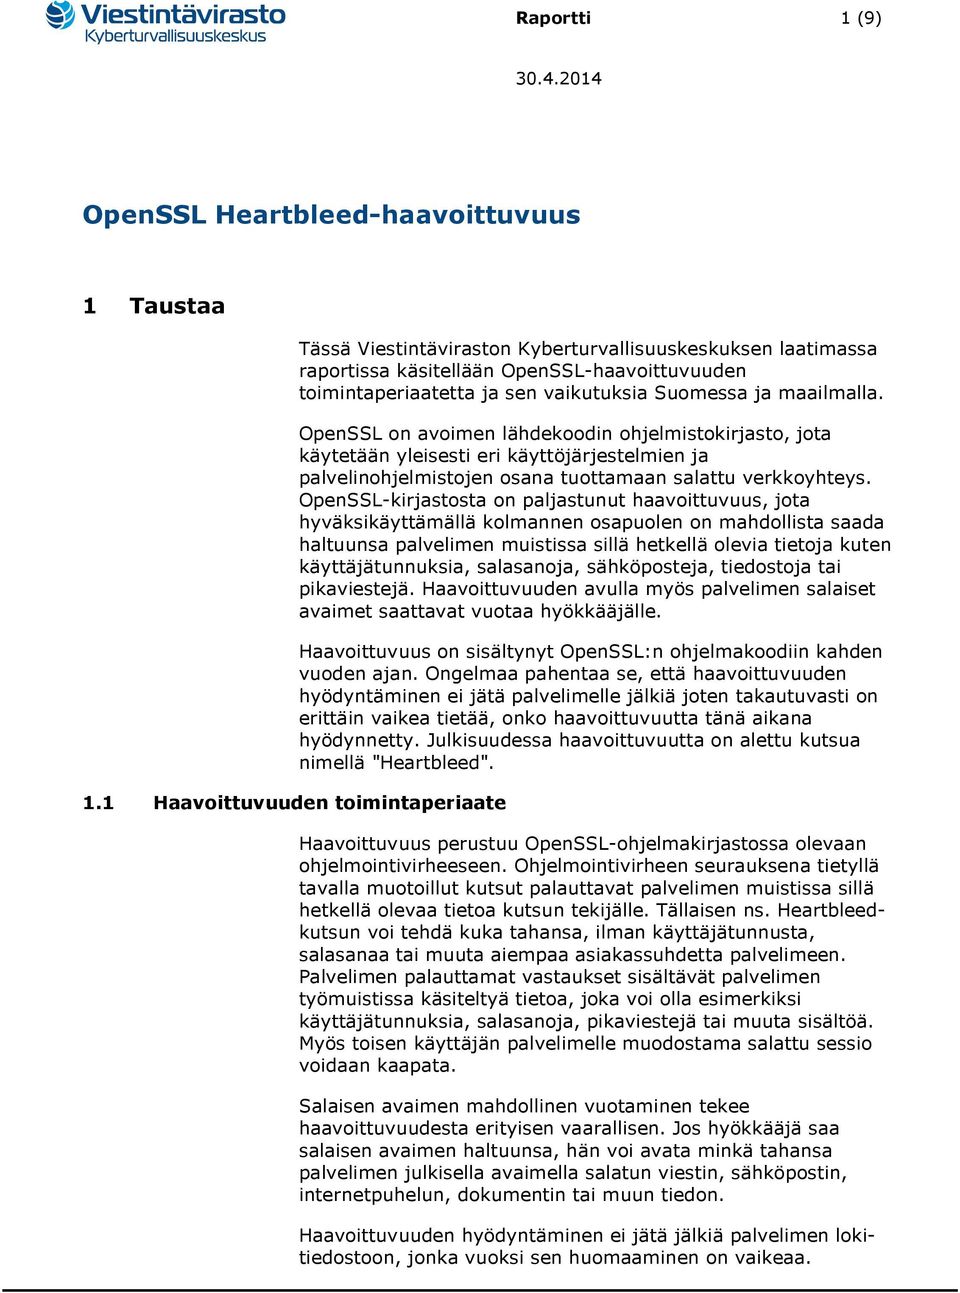 maailmalla. OpenSSL on avoimen lähdekoodin ohjelmistokirjasto, jota käytetään yleisesti eri käyttöjärjestelmien ja palvelinohjelmistojen osana tuottamaan salattu verkkoyhteys.